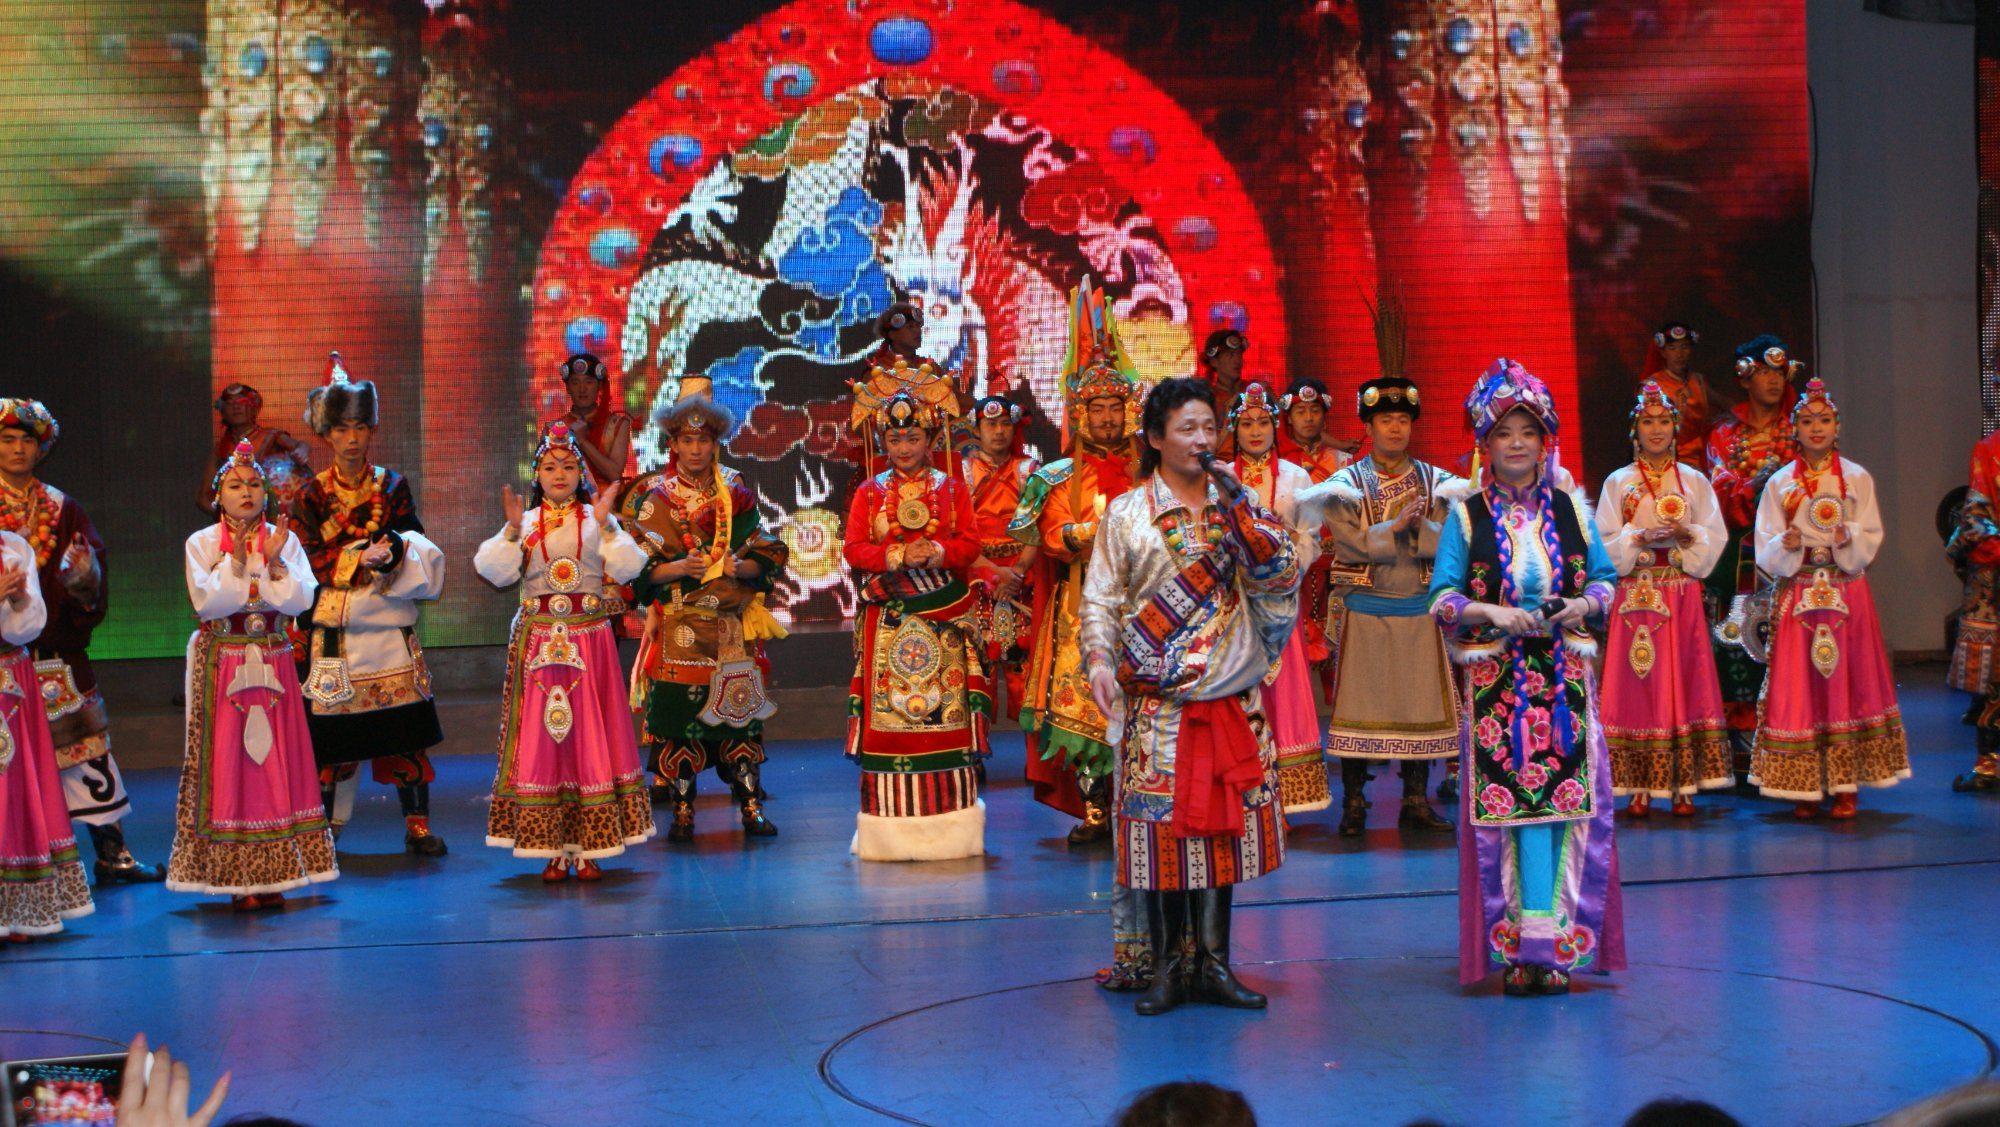 jiuzhaigou night show performance